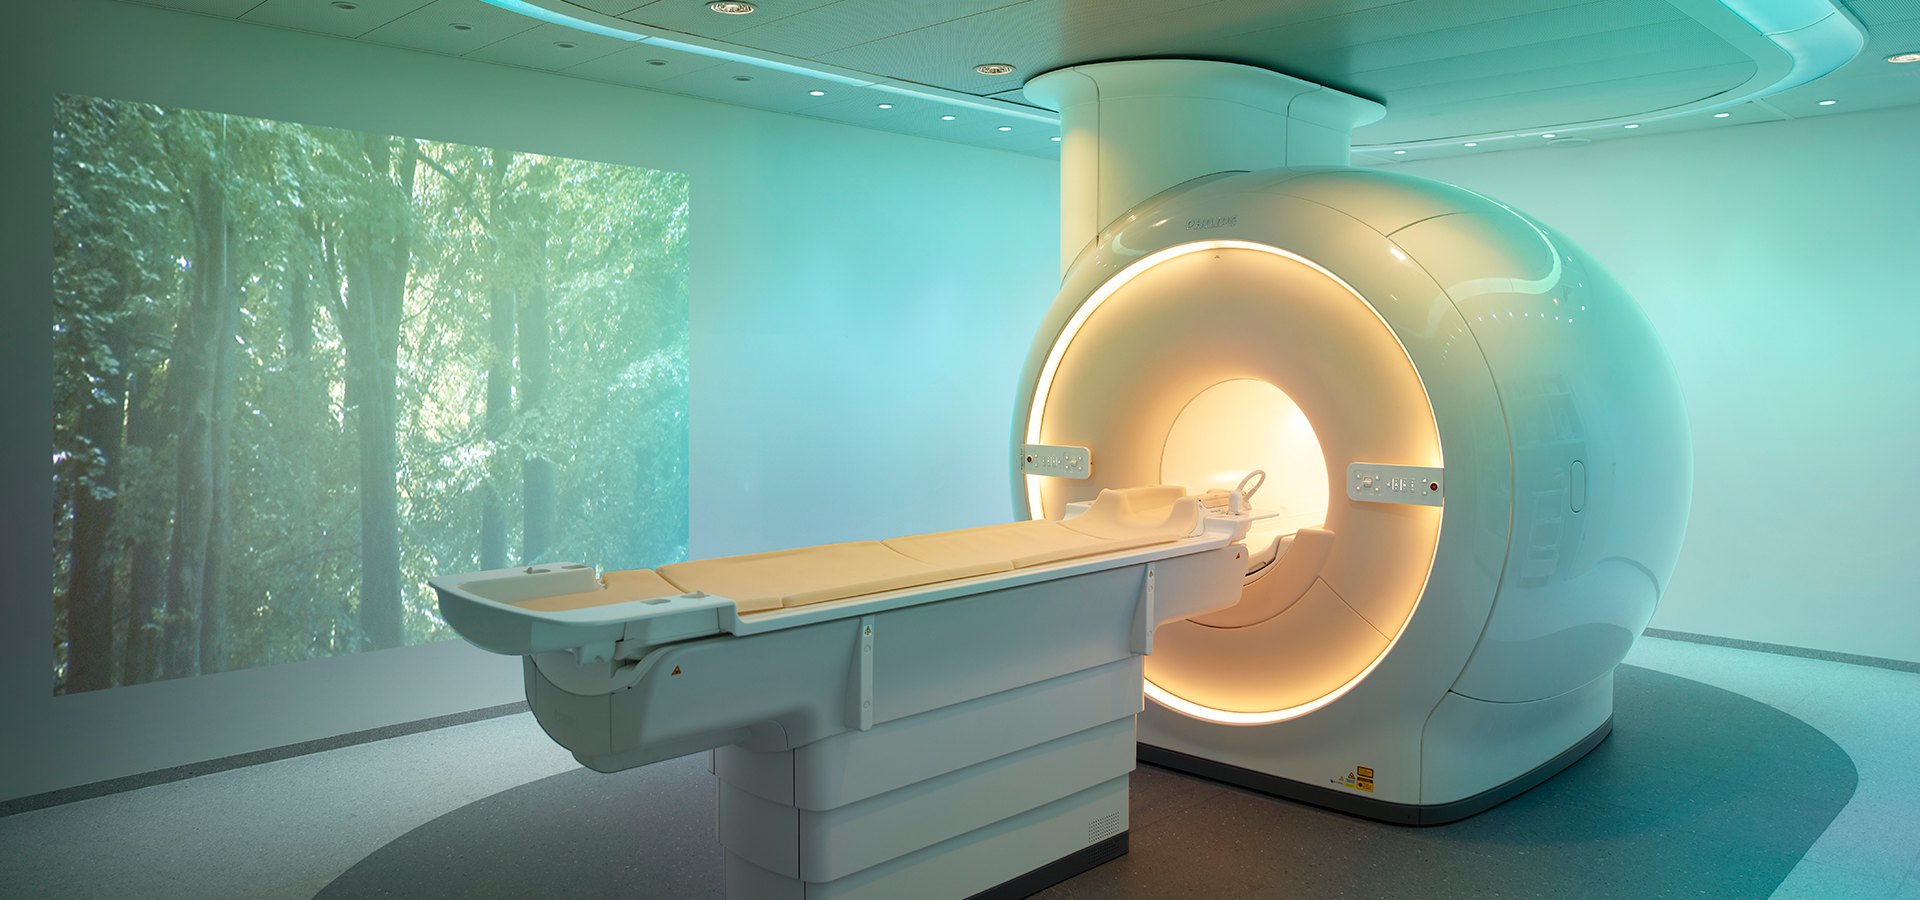 Rezonans magnetyczny – przygotowanie do badania, lista placówek